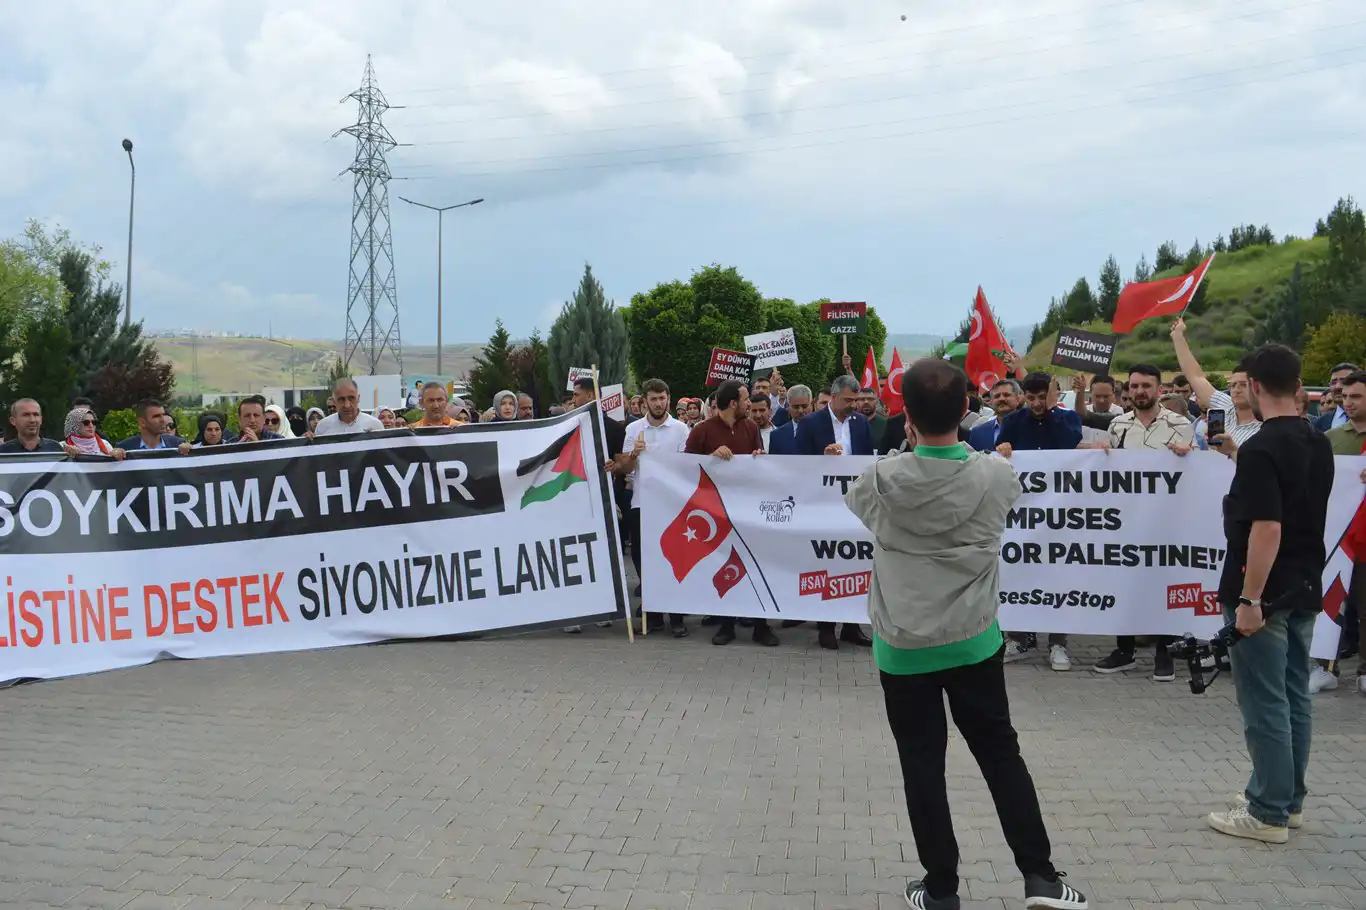 Siirt Üniversitesi öğrencileri, işgalci barbarlığına karşı durma çağrısında bulundu